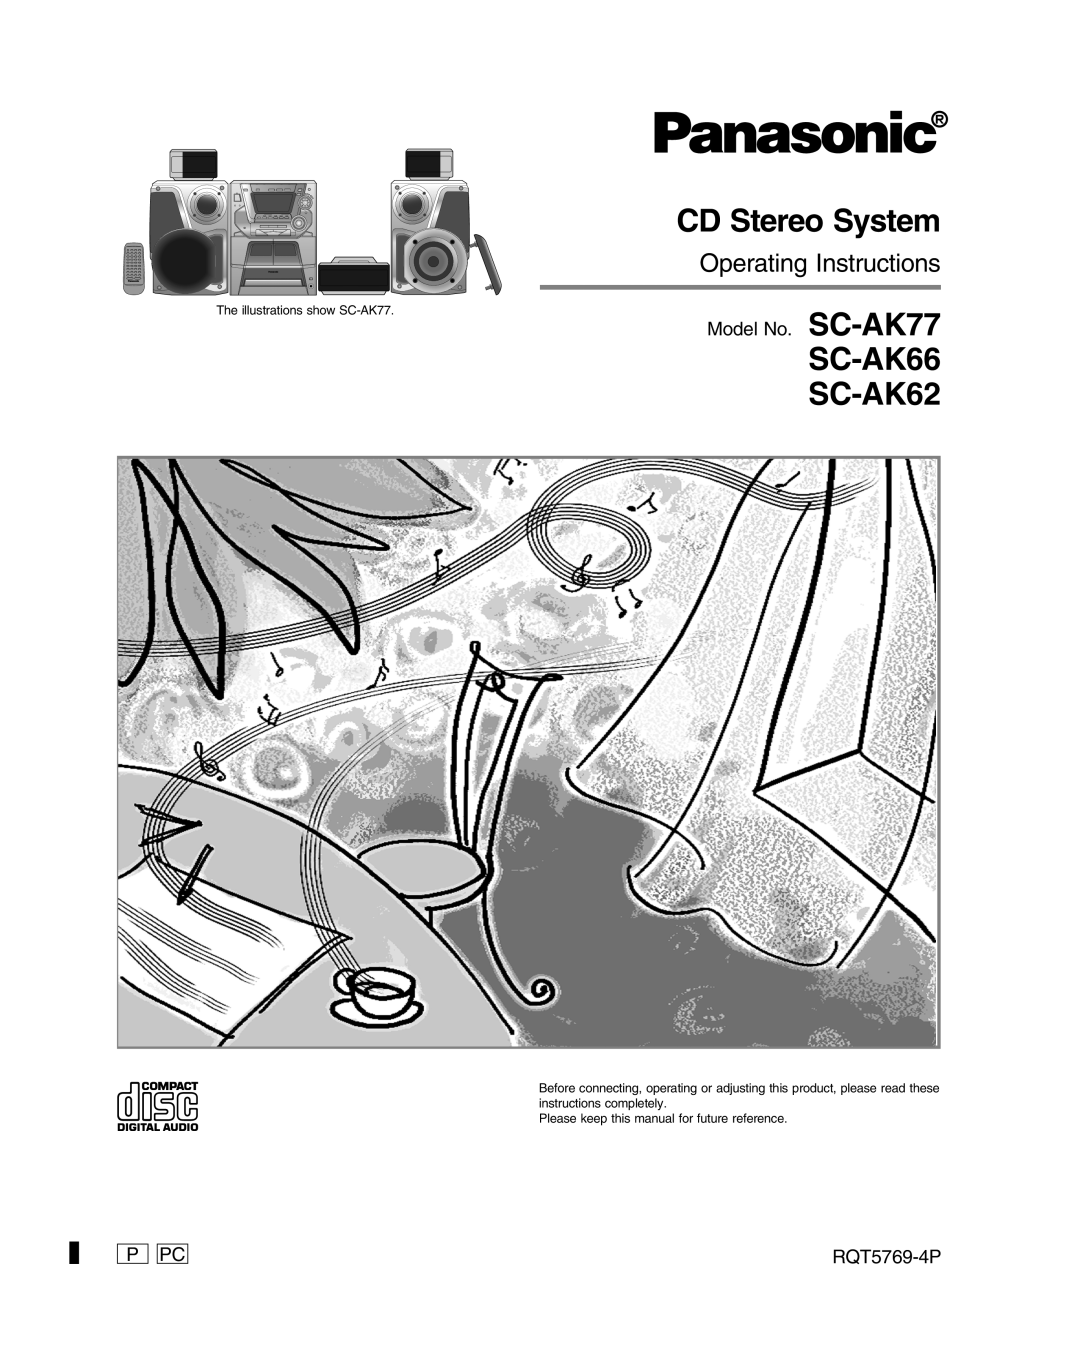 Panasonic manual Model No. SC-AK77, P Pc, RQT5769-4P, CD Stereo System, SC-AK66 SC-AK62, Operating Instructions 